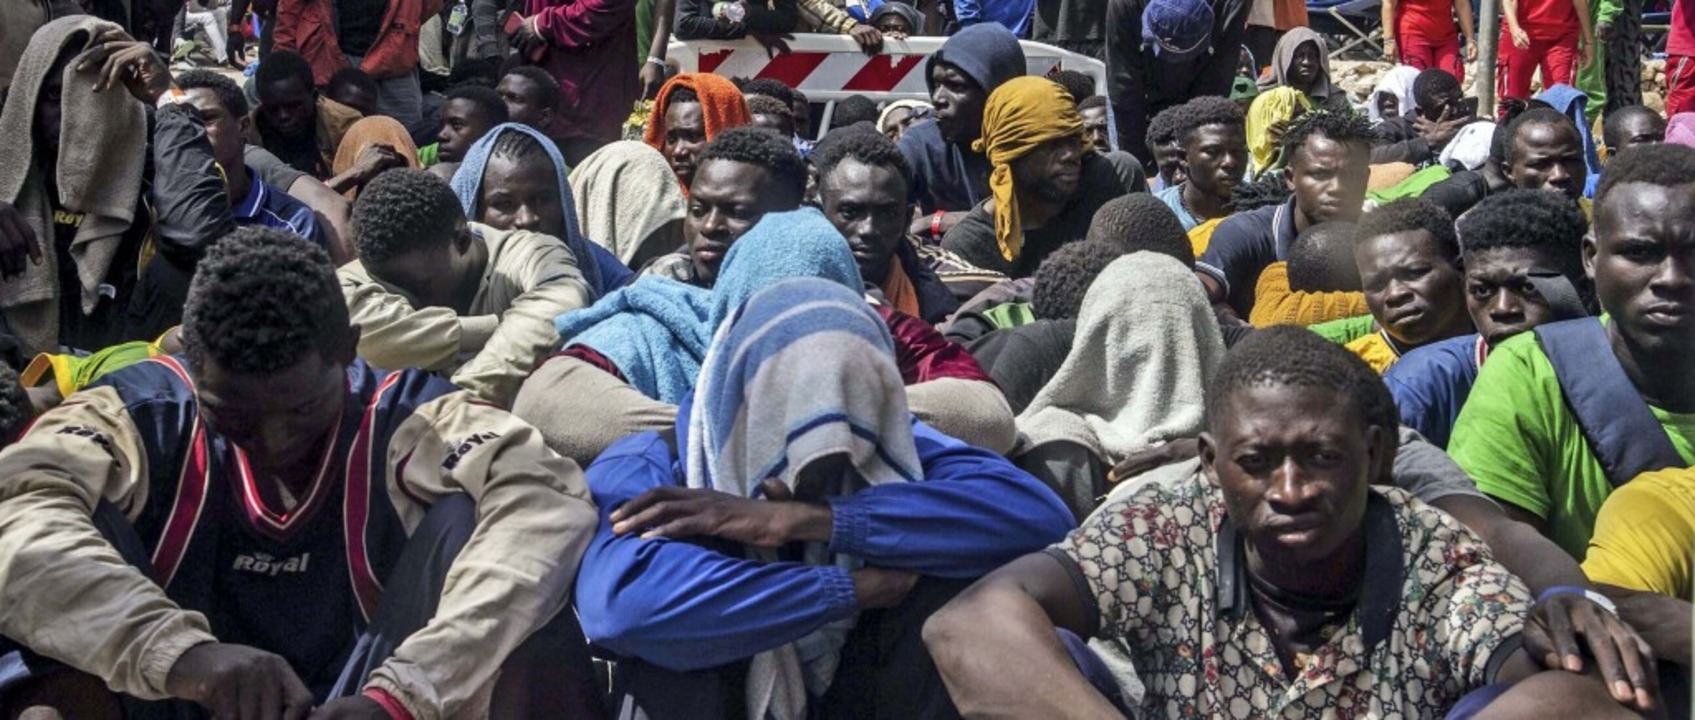 6000 neu angekommene Migranten aus Afr...lienischen Insel Lampedusa am Samstag.  | Foto: IMAGO/Alessandro Serranò / Avalon